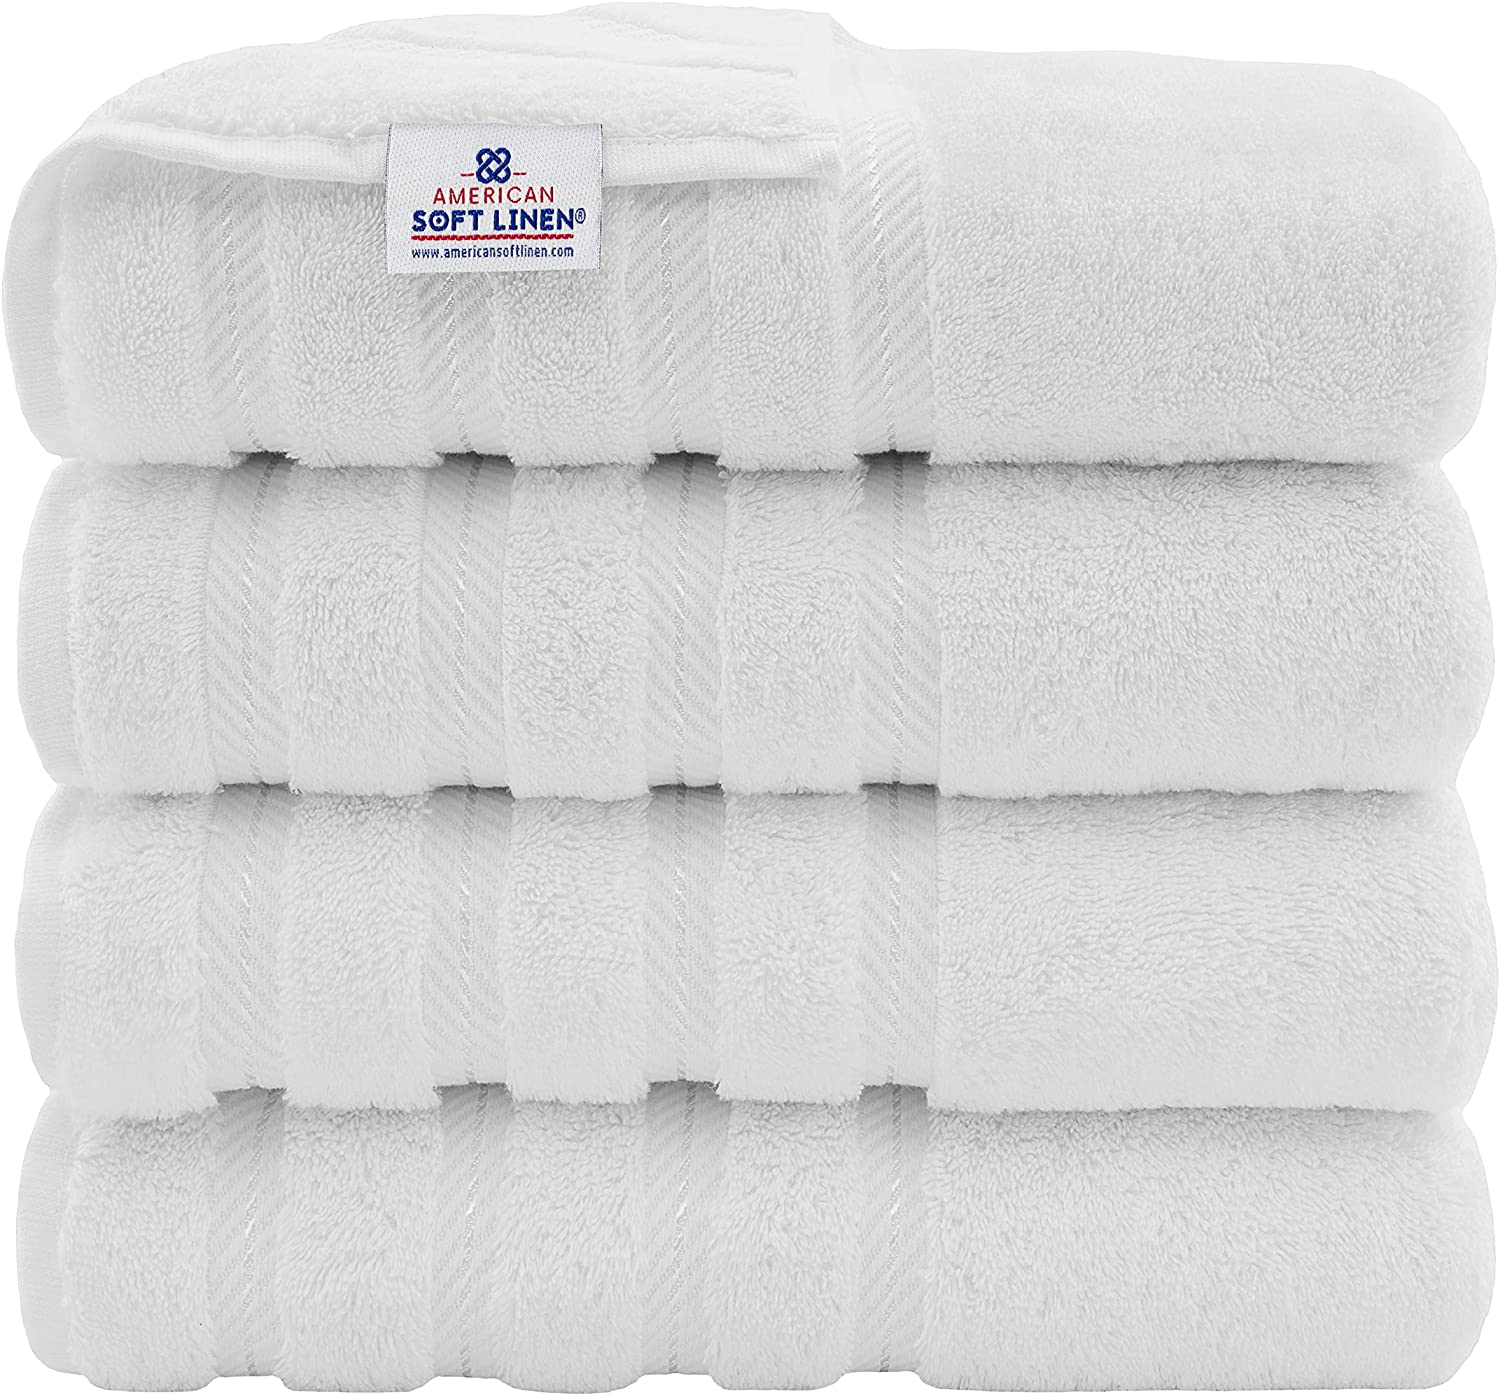 American Soft Linen Extra Plush Cotton Bath Towels, 6-Piece